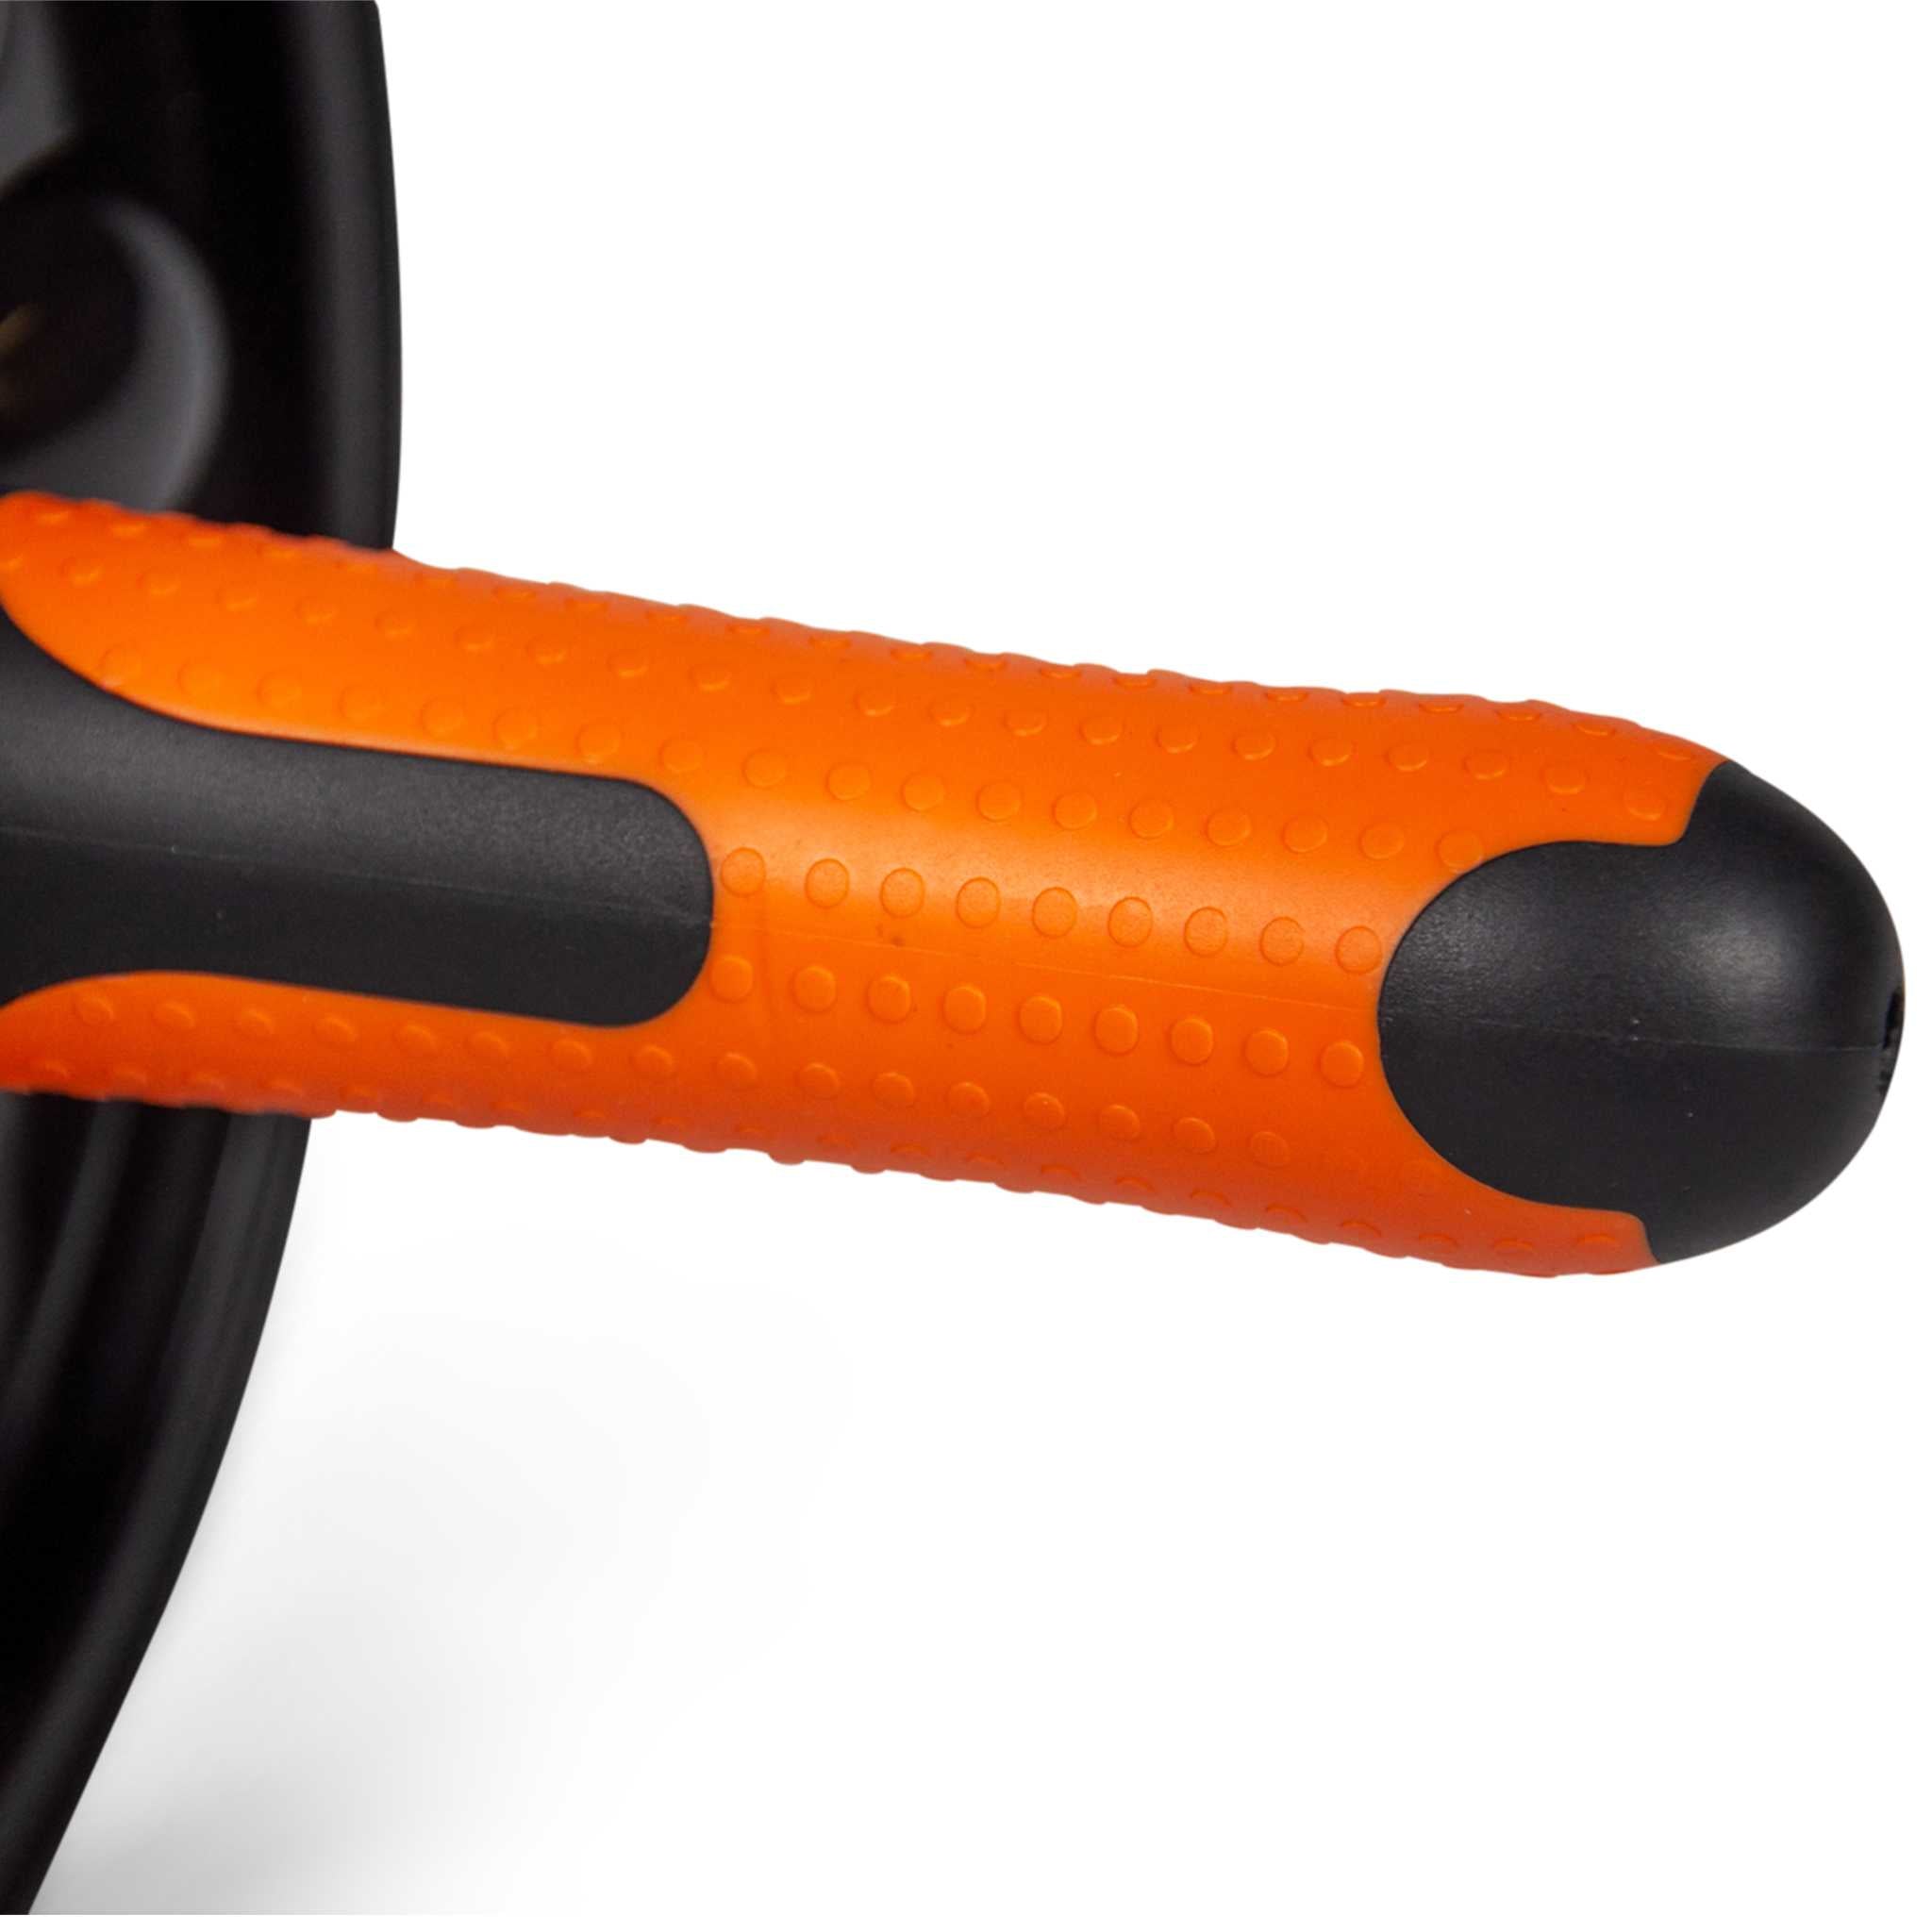 Deluxe Ab Roller, Double Wheel Upper Body Exerciser, Exclusive Design